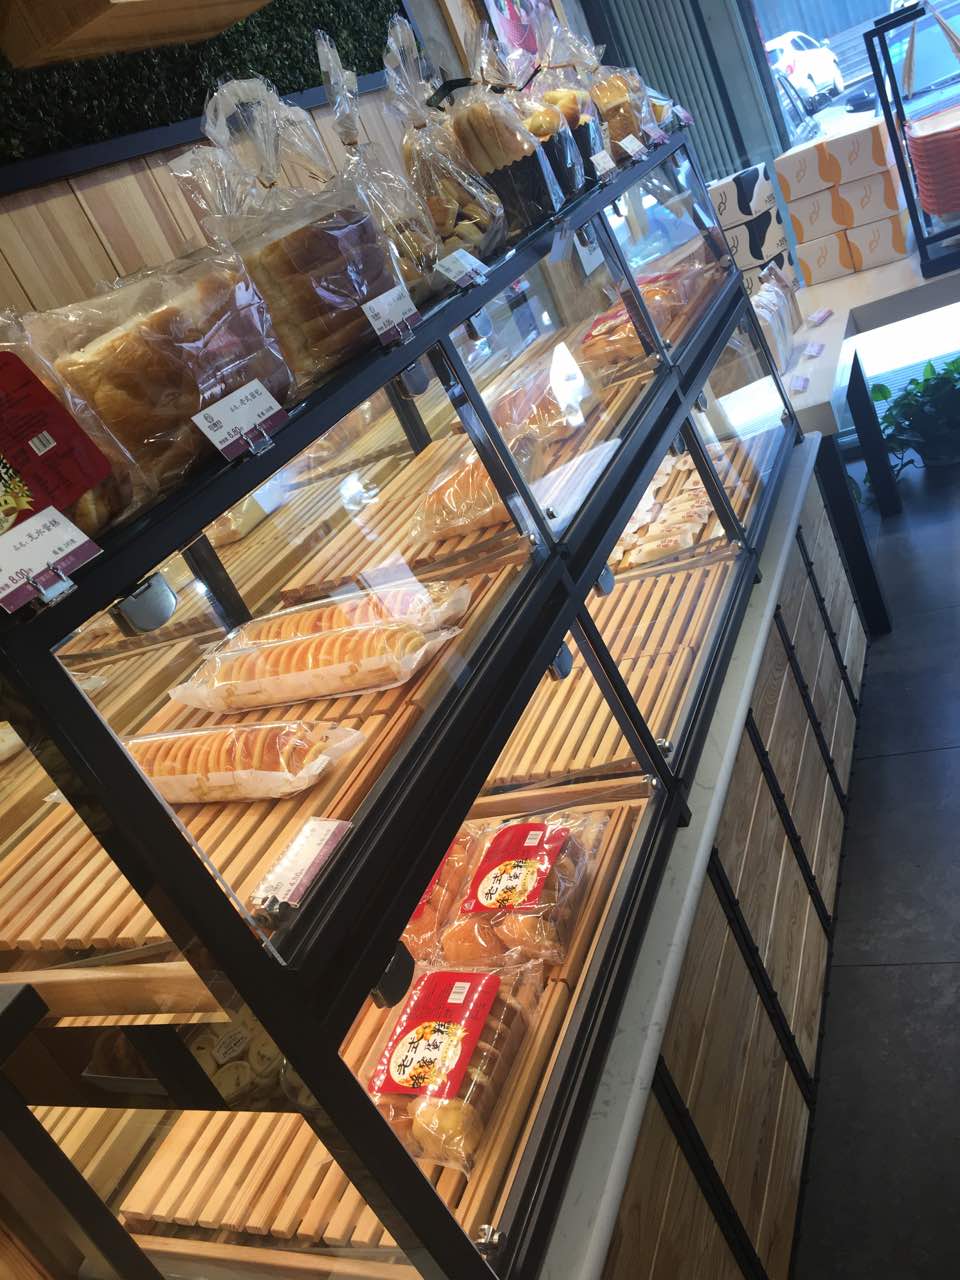 2019巧媳妇(莱山芳华园店)美食餐厅,面包口感一直非常棒,服务也